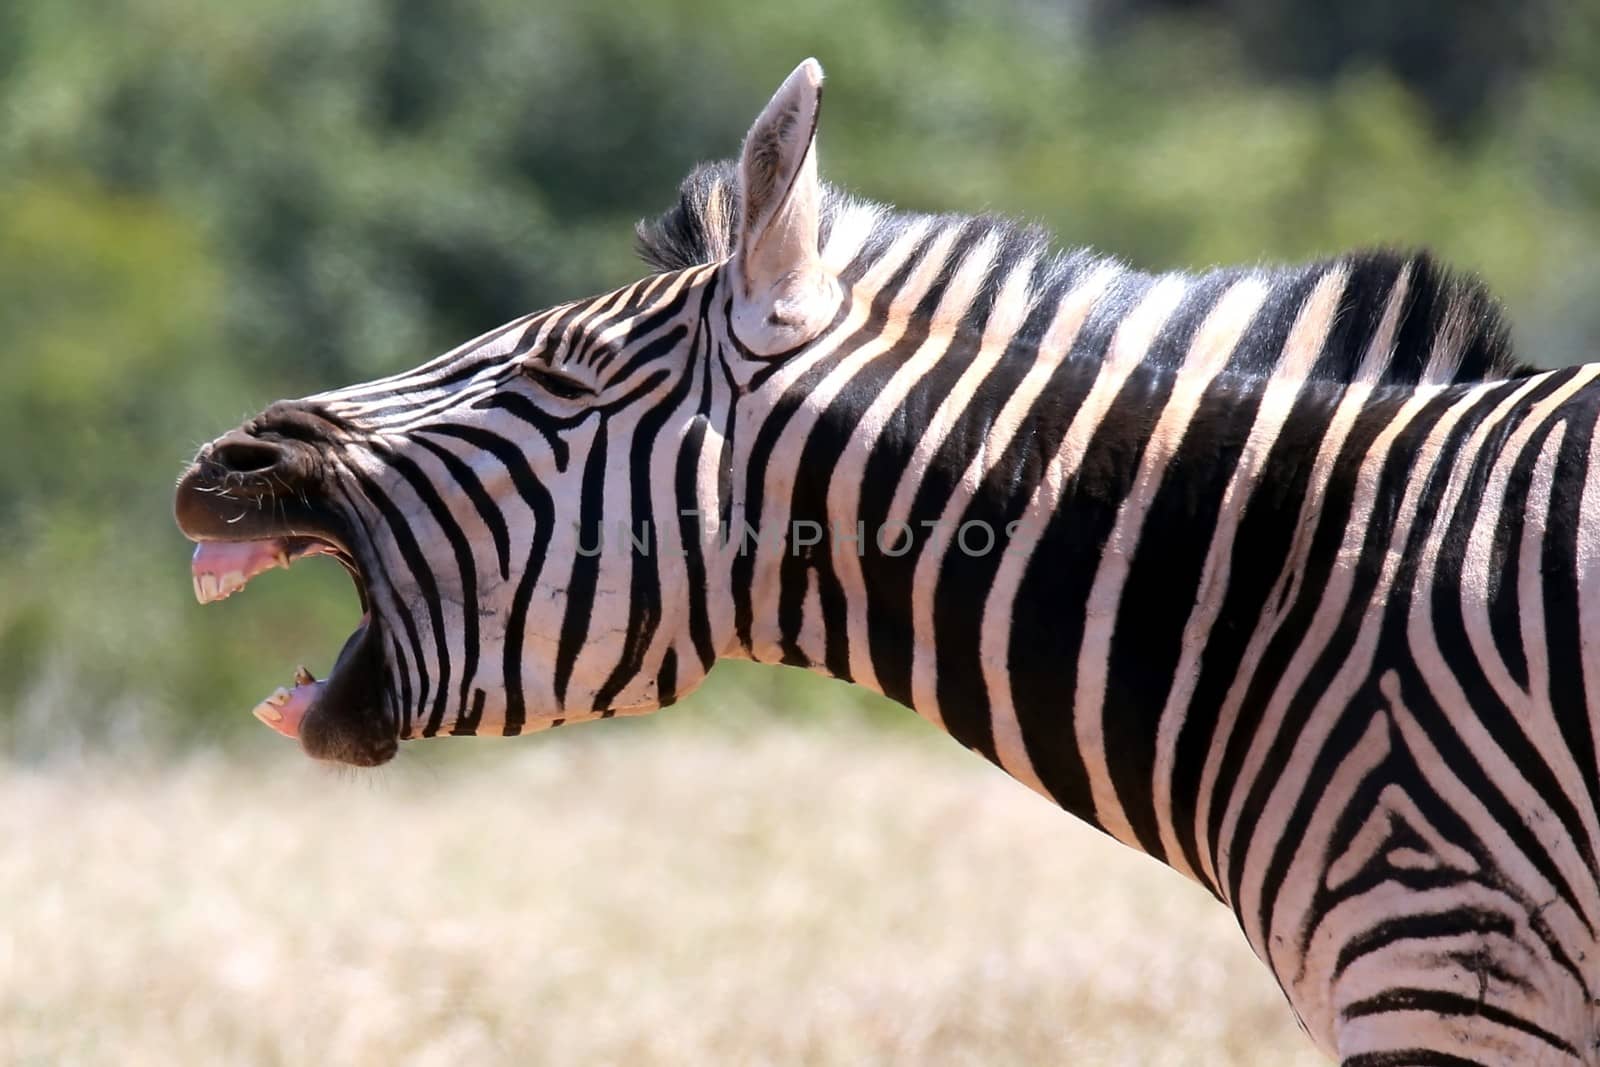 Zebra Shout by fouroaks